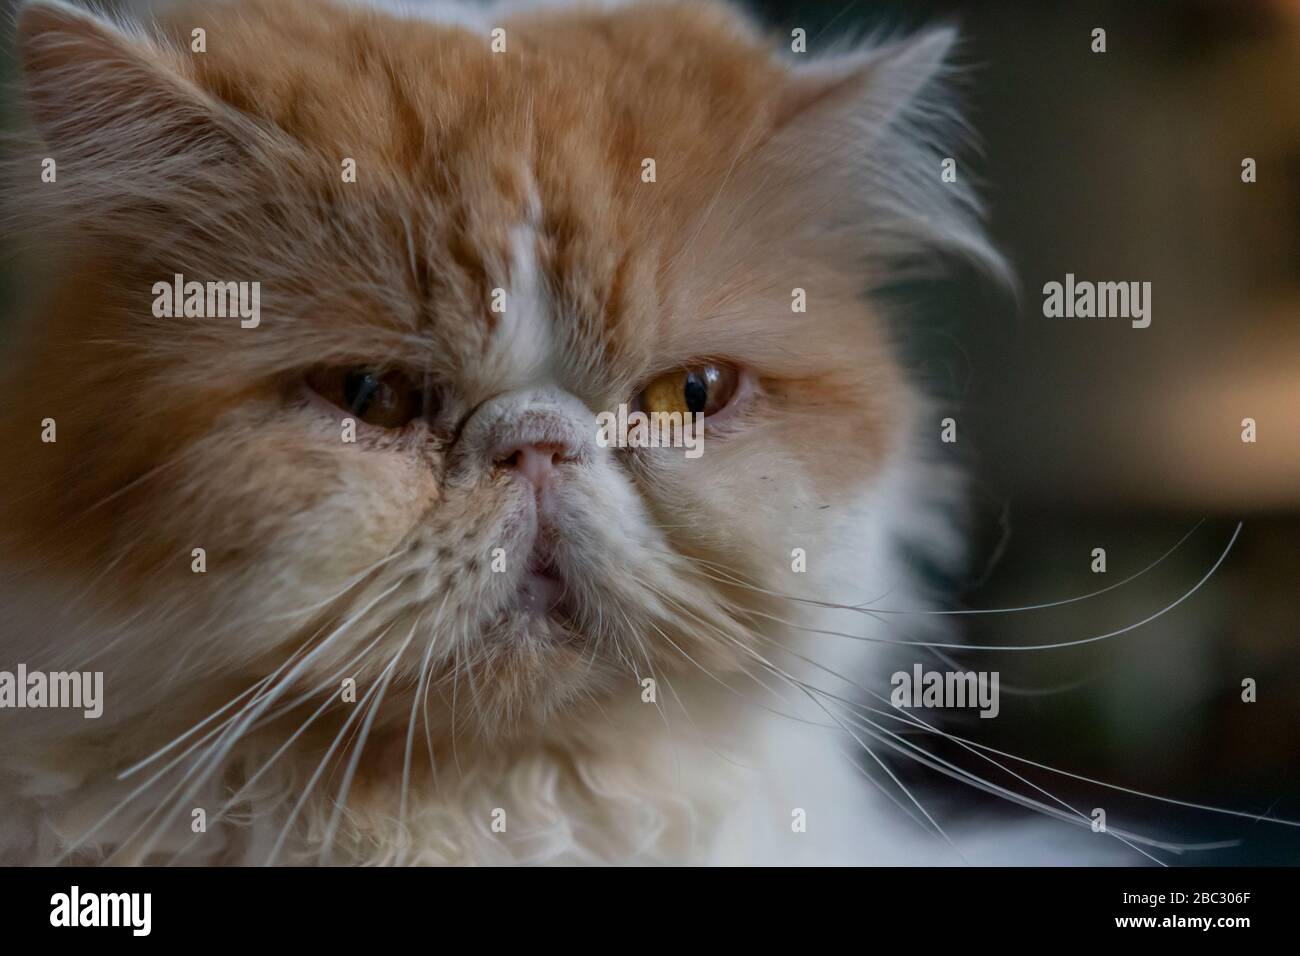 Cat, grumpy cat face close up, ginger Stock Photo